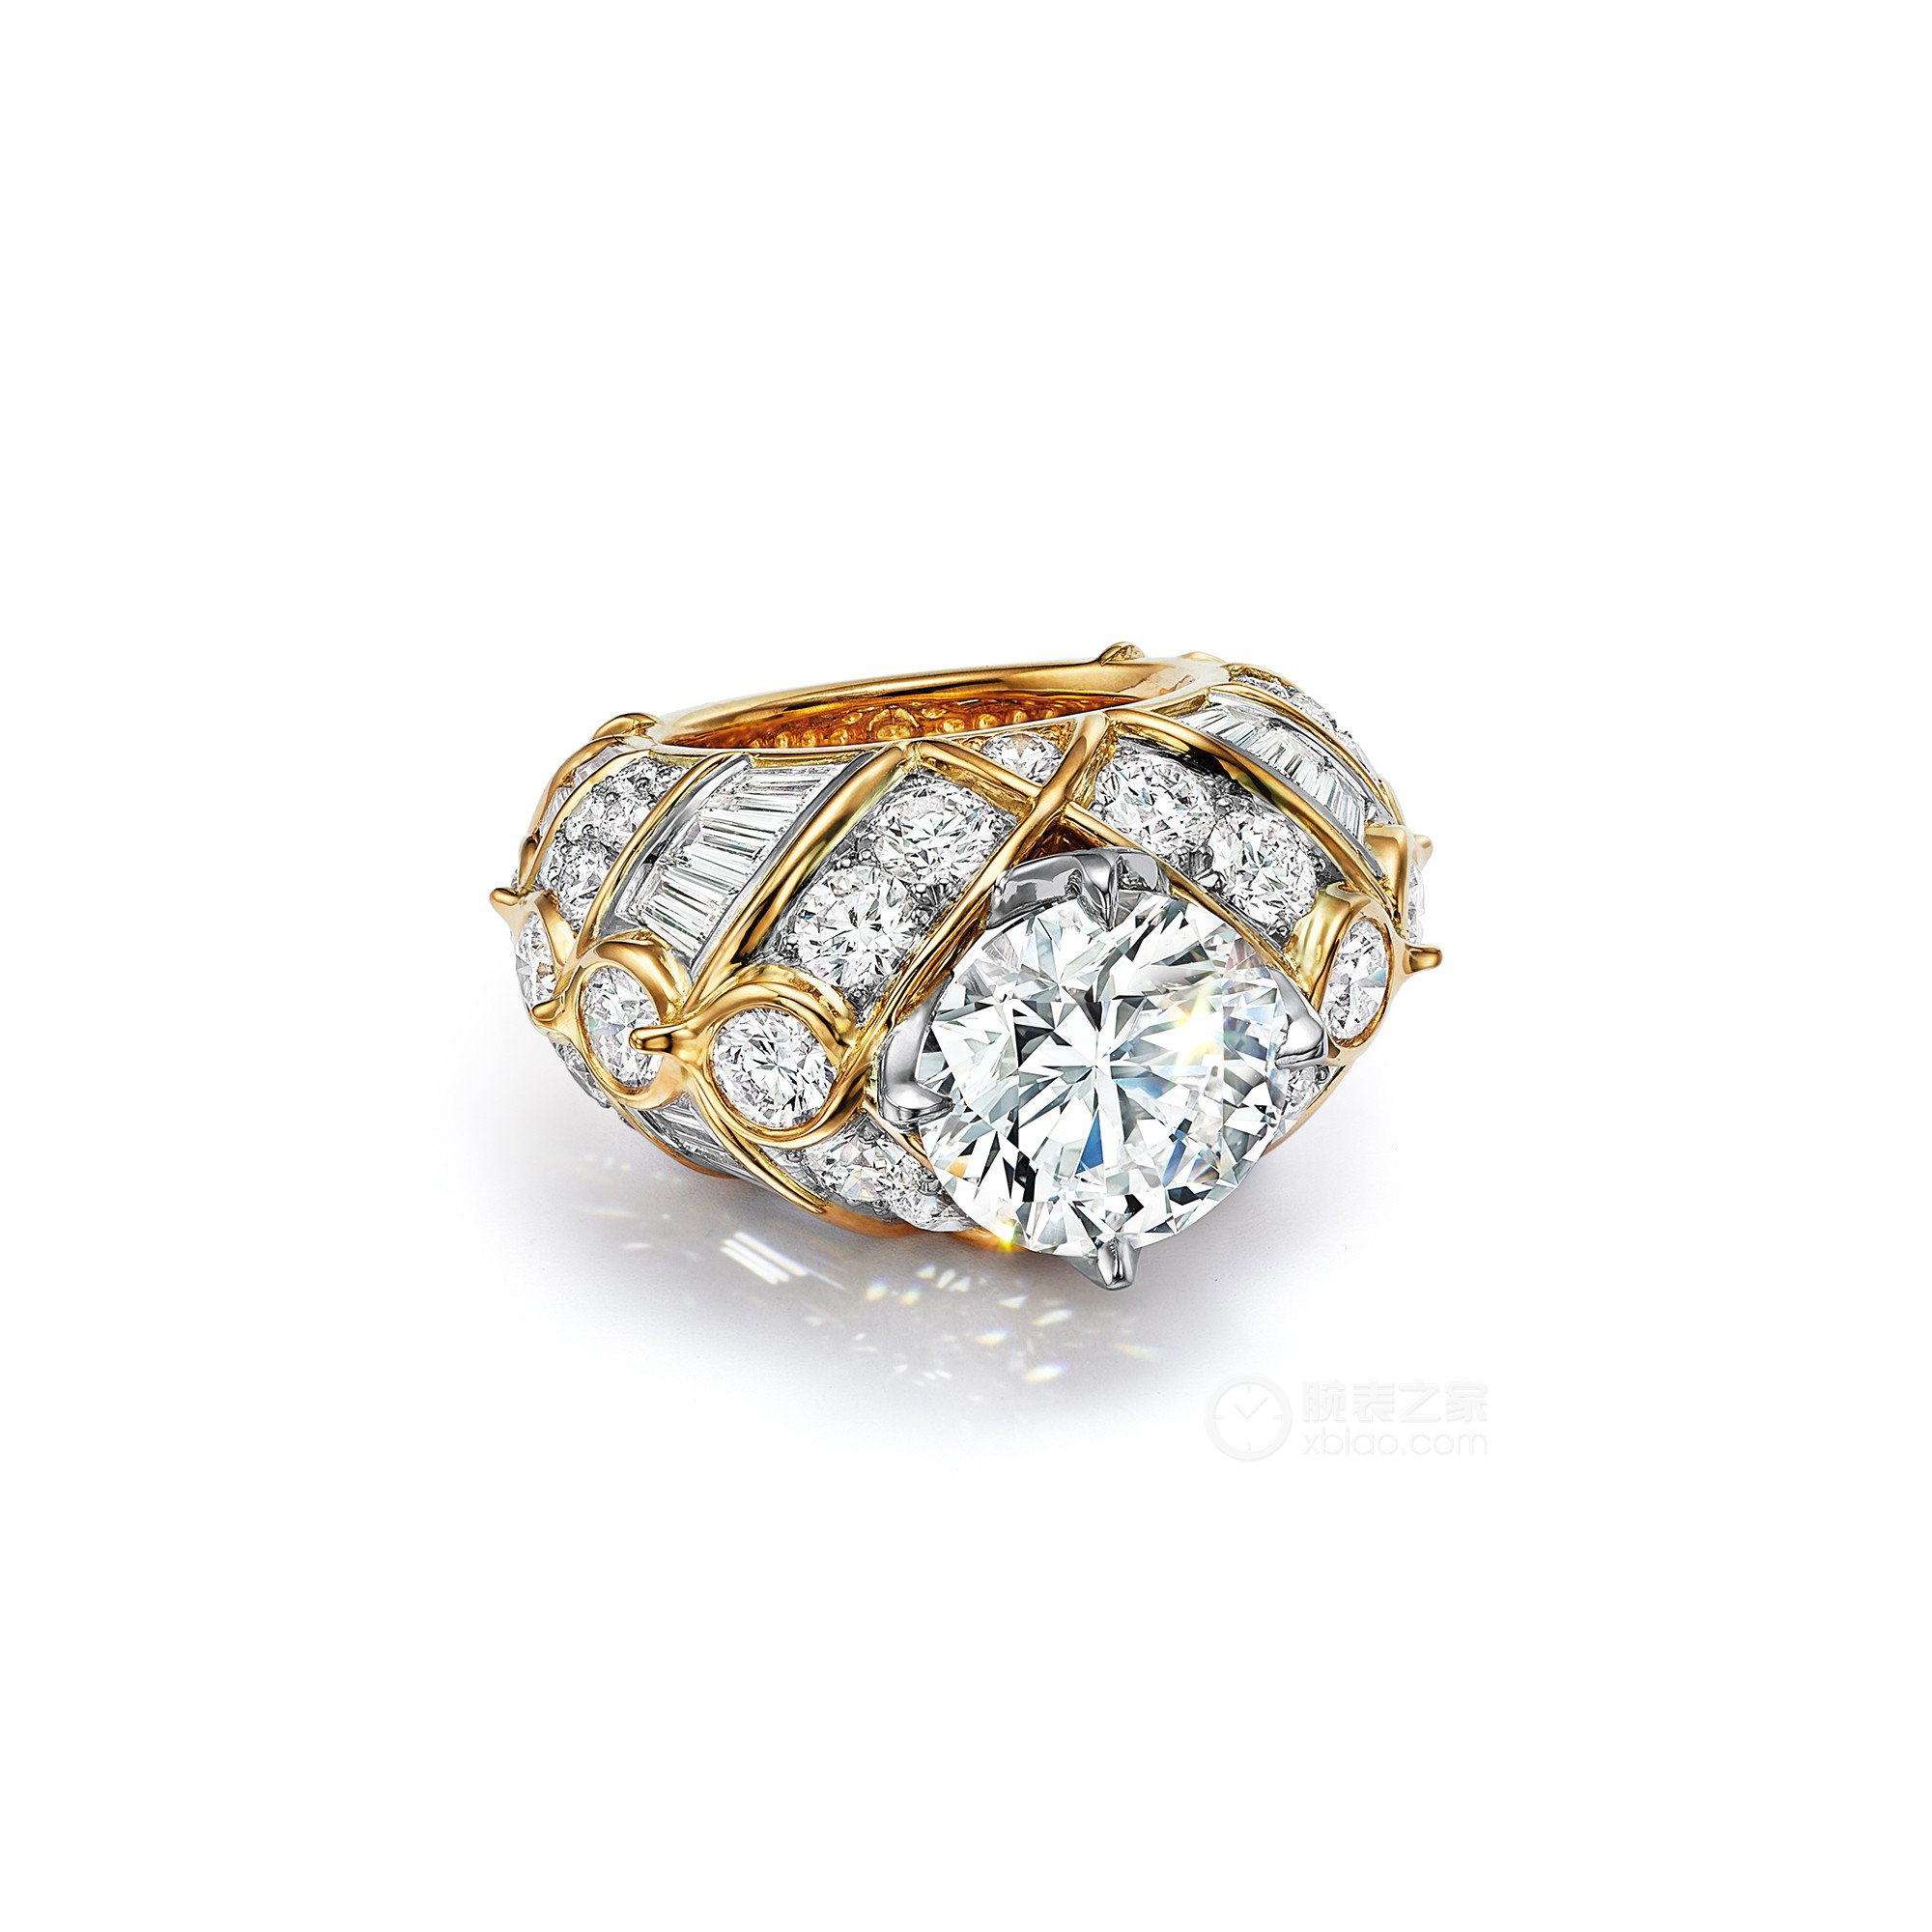 蒂芙尼BLUE BOOK高级珠宝铂金及18K黄金镶嵌一颗重逾6克拉的钻石及钻石戒指戒指